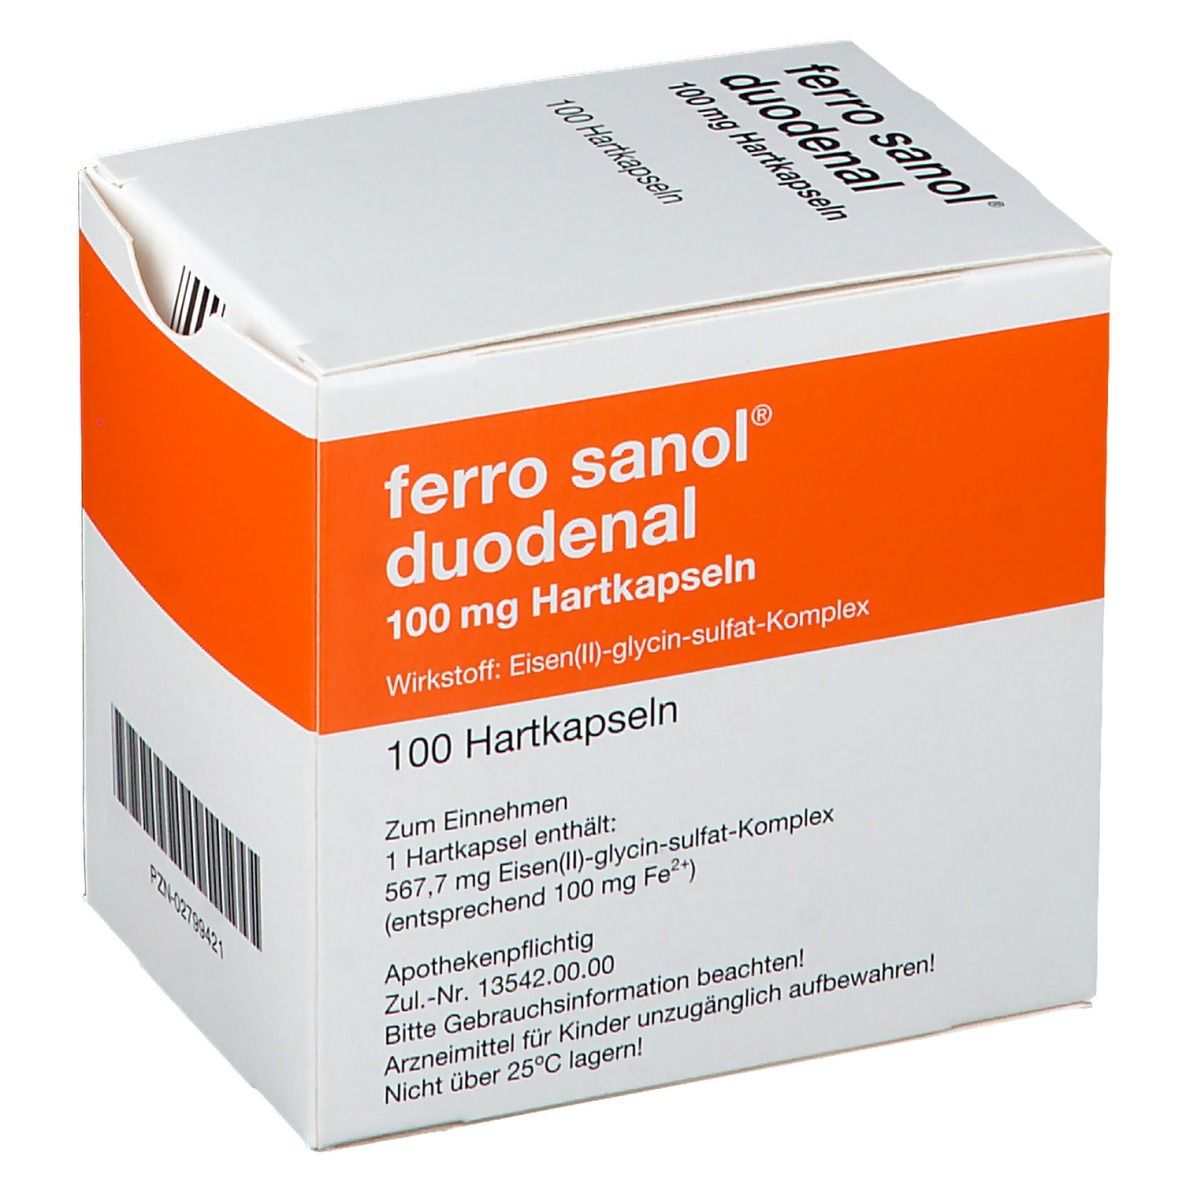 ferro sanol® duodenal